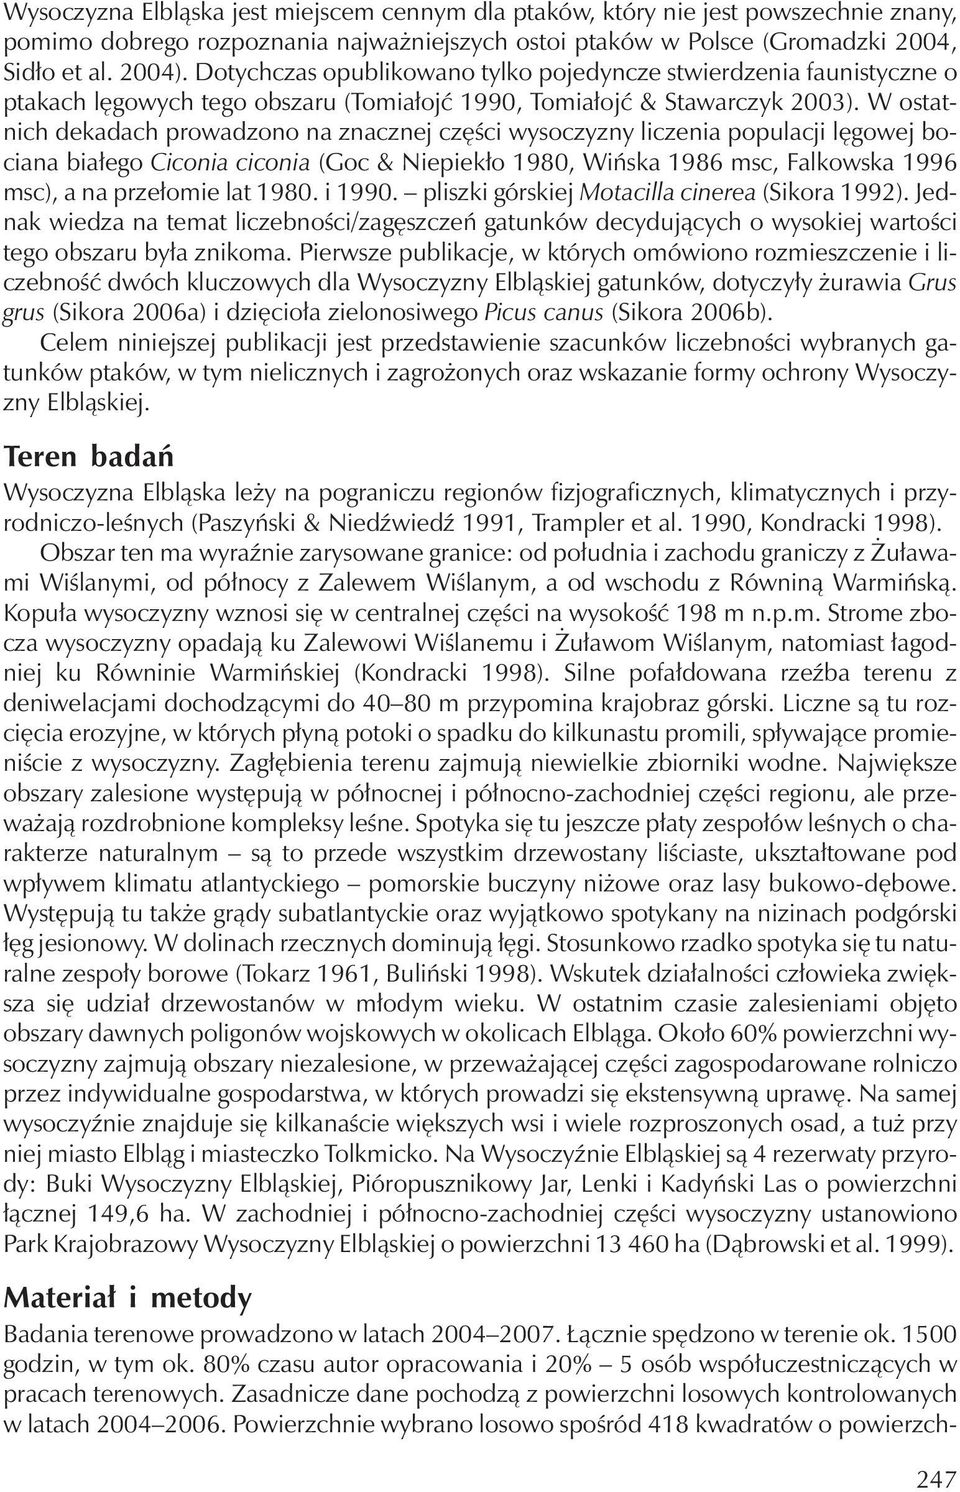 W ostatnichdekadachprowadzono na znacznej części wysoczyzny liczenia populacji lęgowej bociana białego Ciconia ciconia (Goc & Niepiekło 1980, Wińska 1986 msc, Falkowska 1996 msc), a na przełomie lat